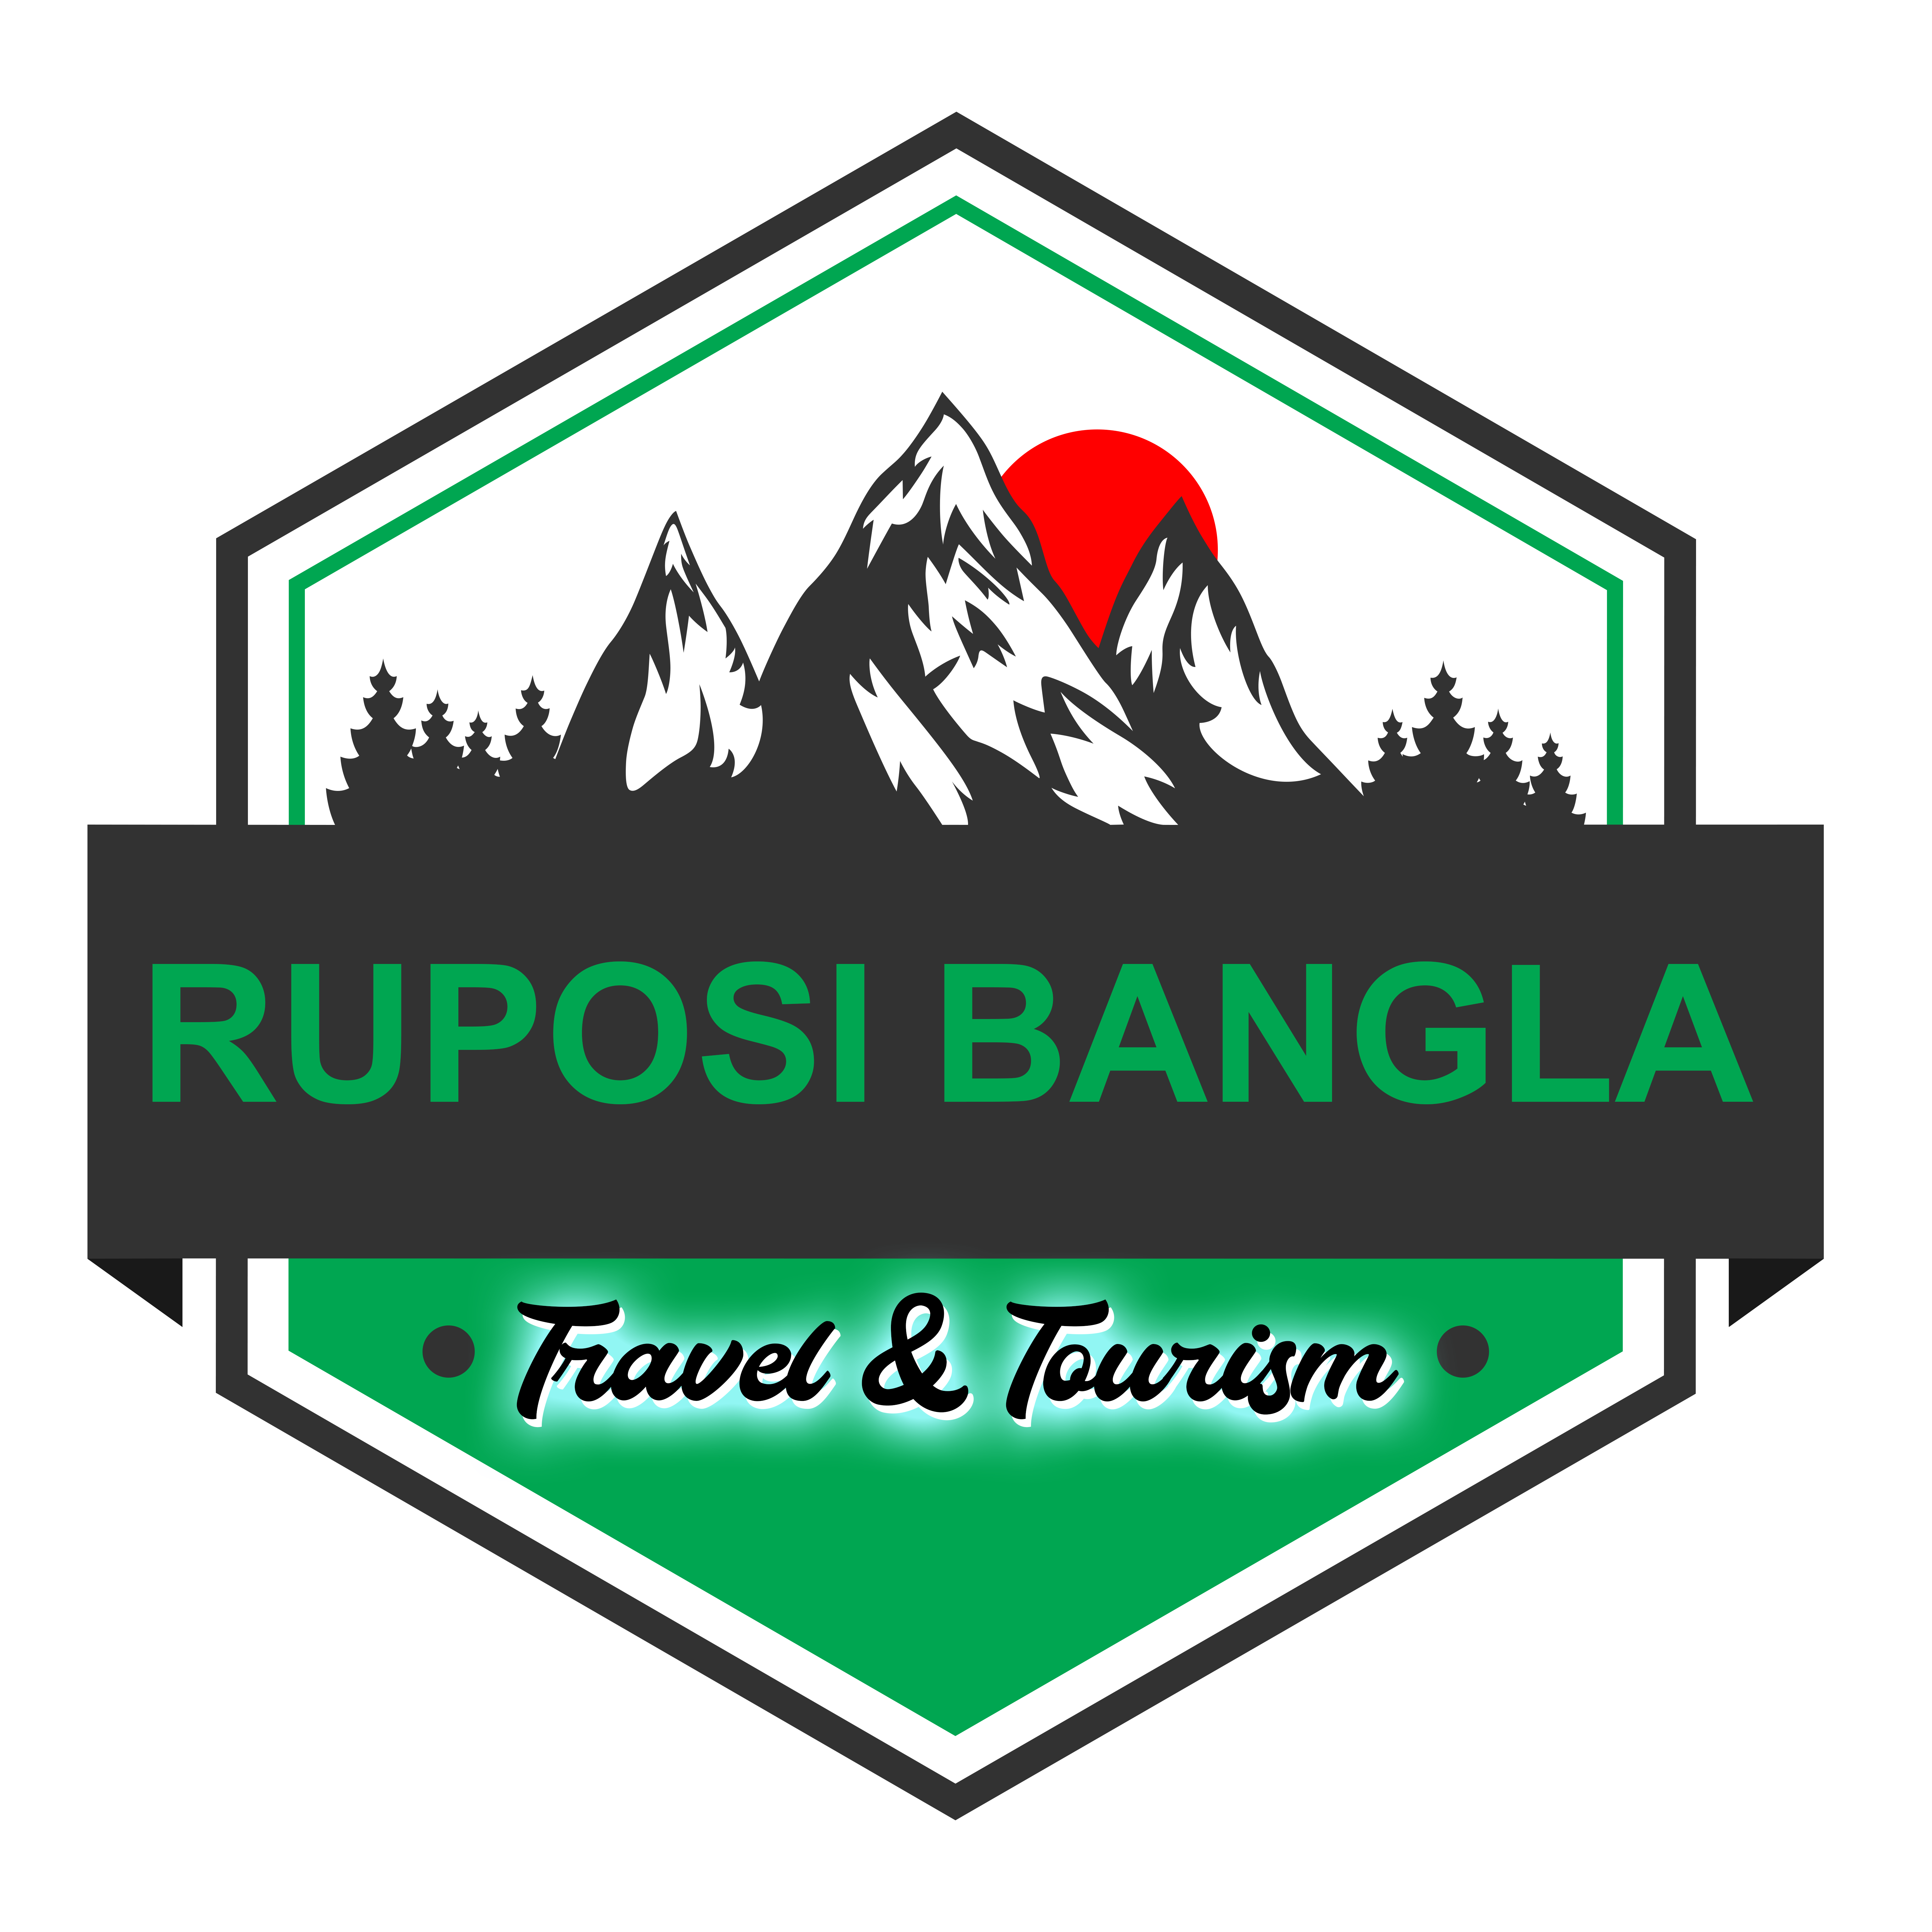 Ruposi Bangla Tourism